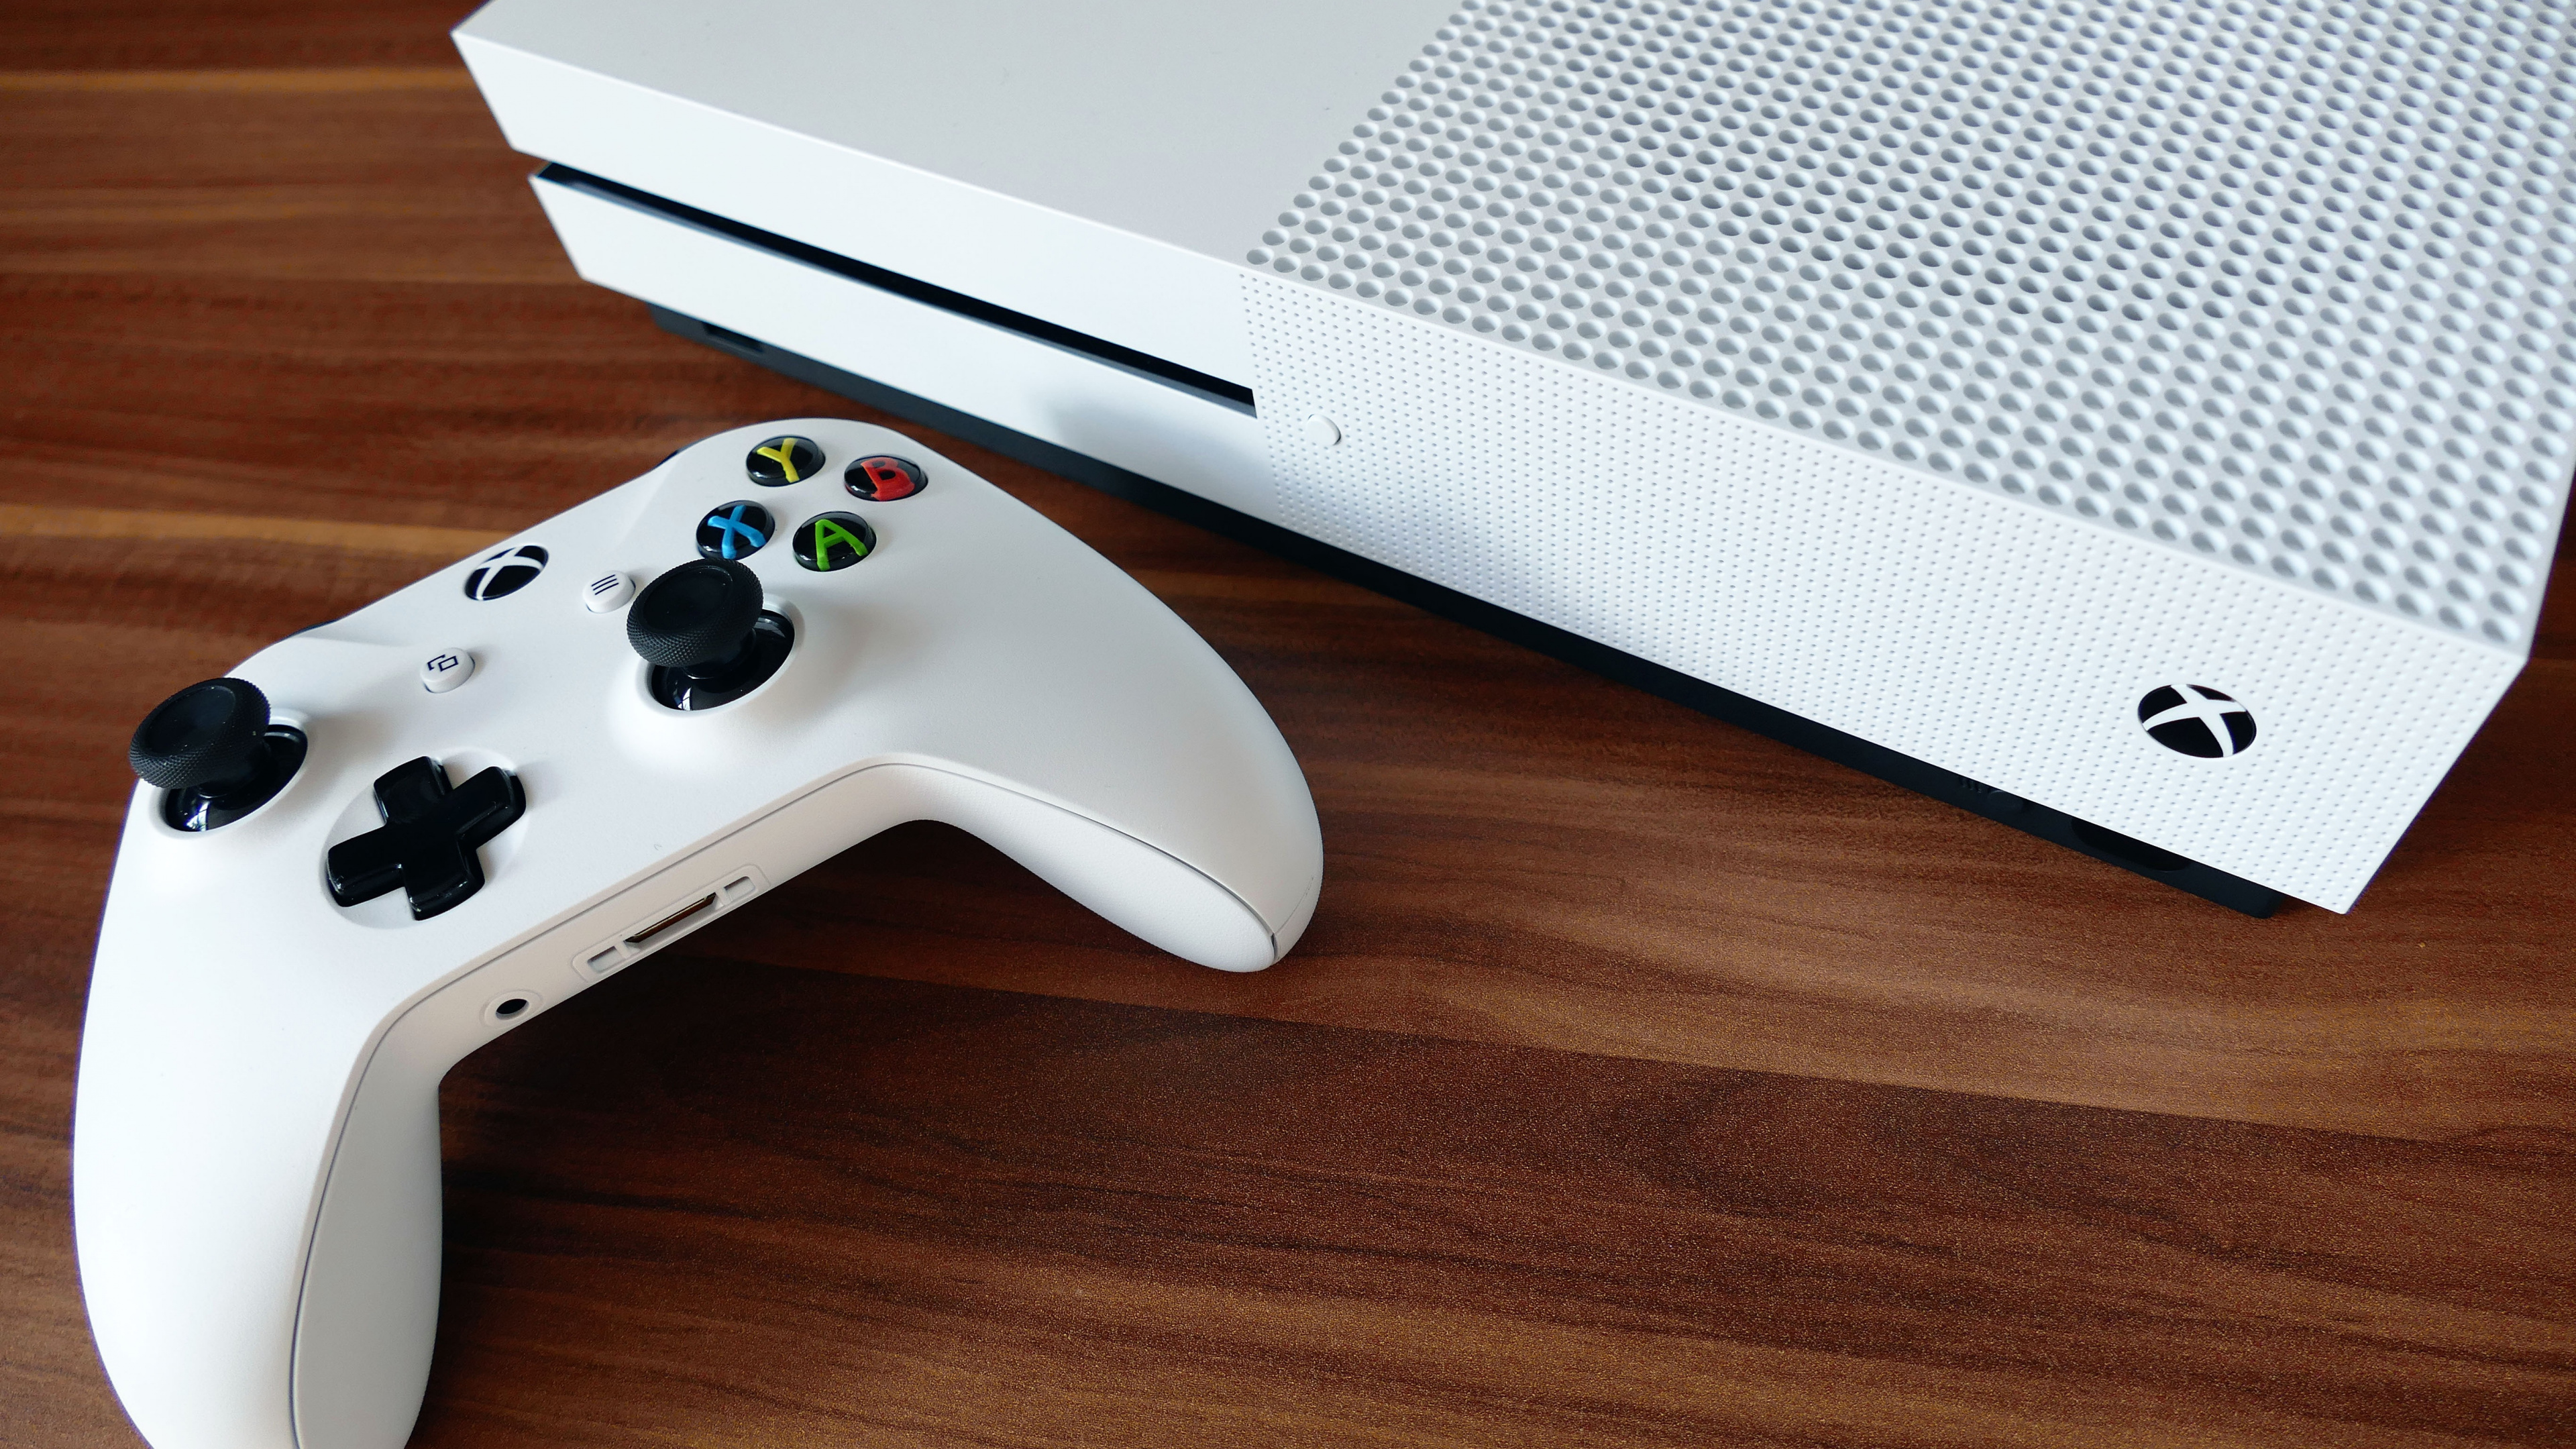 Consola Xbox One Blanca y Controlador de Juegos. Wallpaper in 3840x2160 Resolution